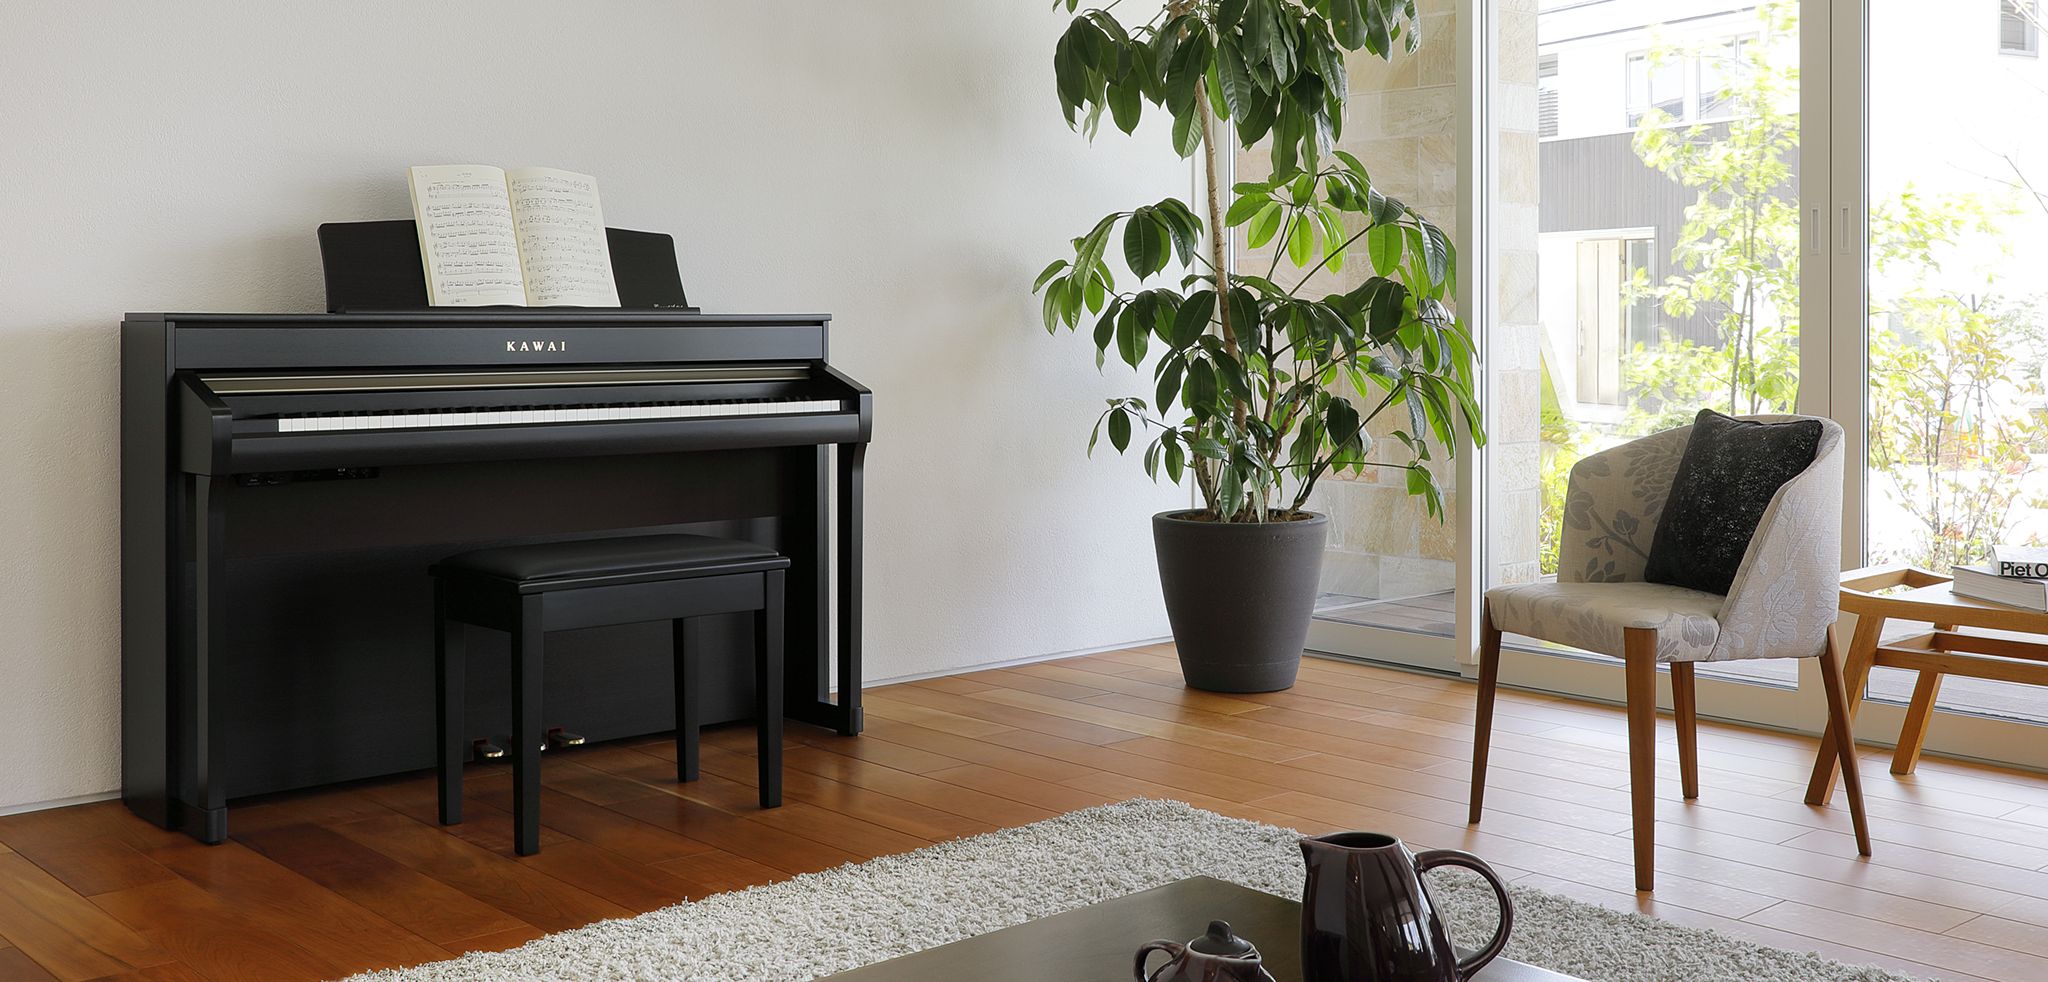 Kinh nghiệm giúp bạn chọn mua đàn piano cơ tốt nhất